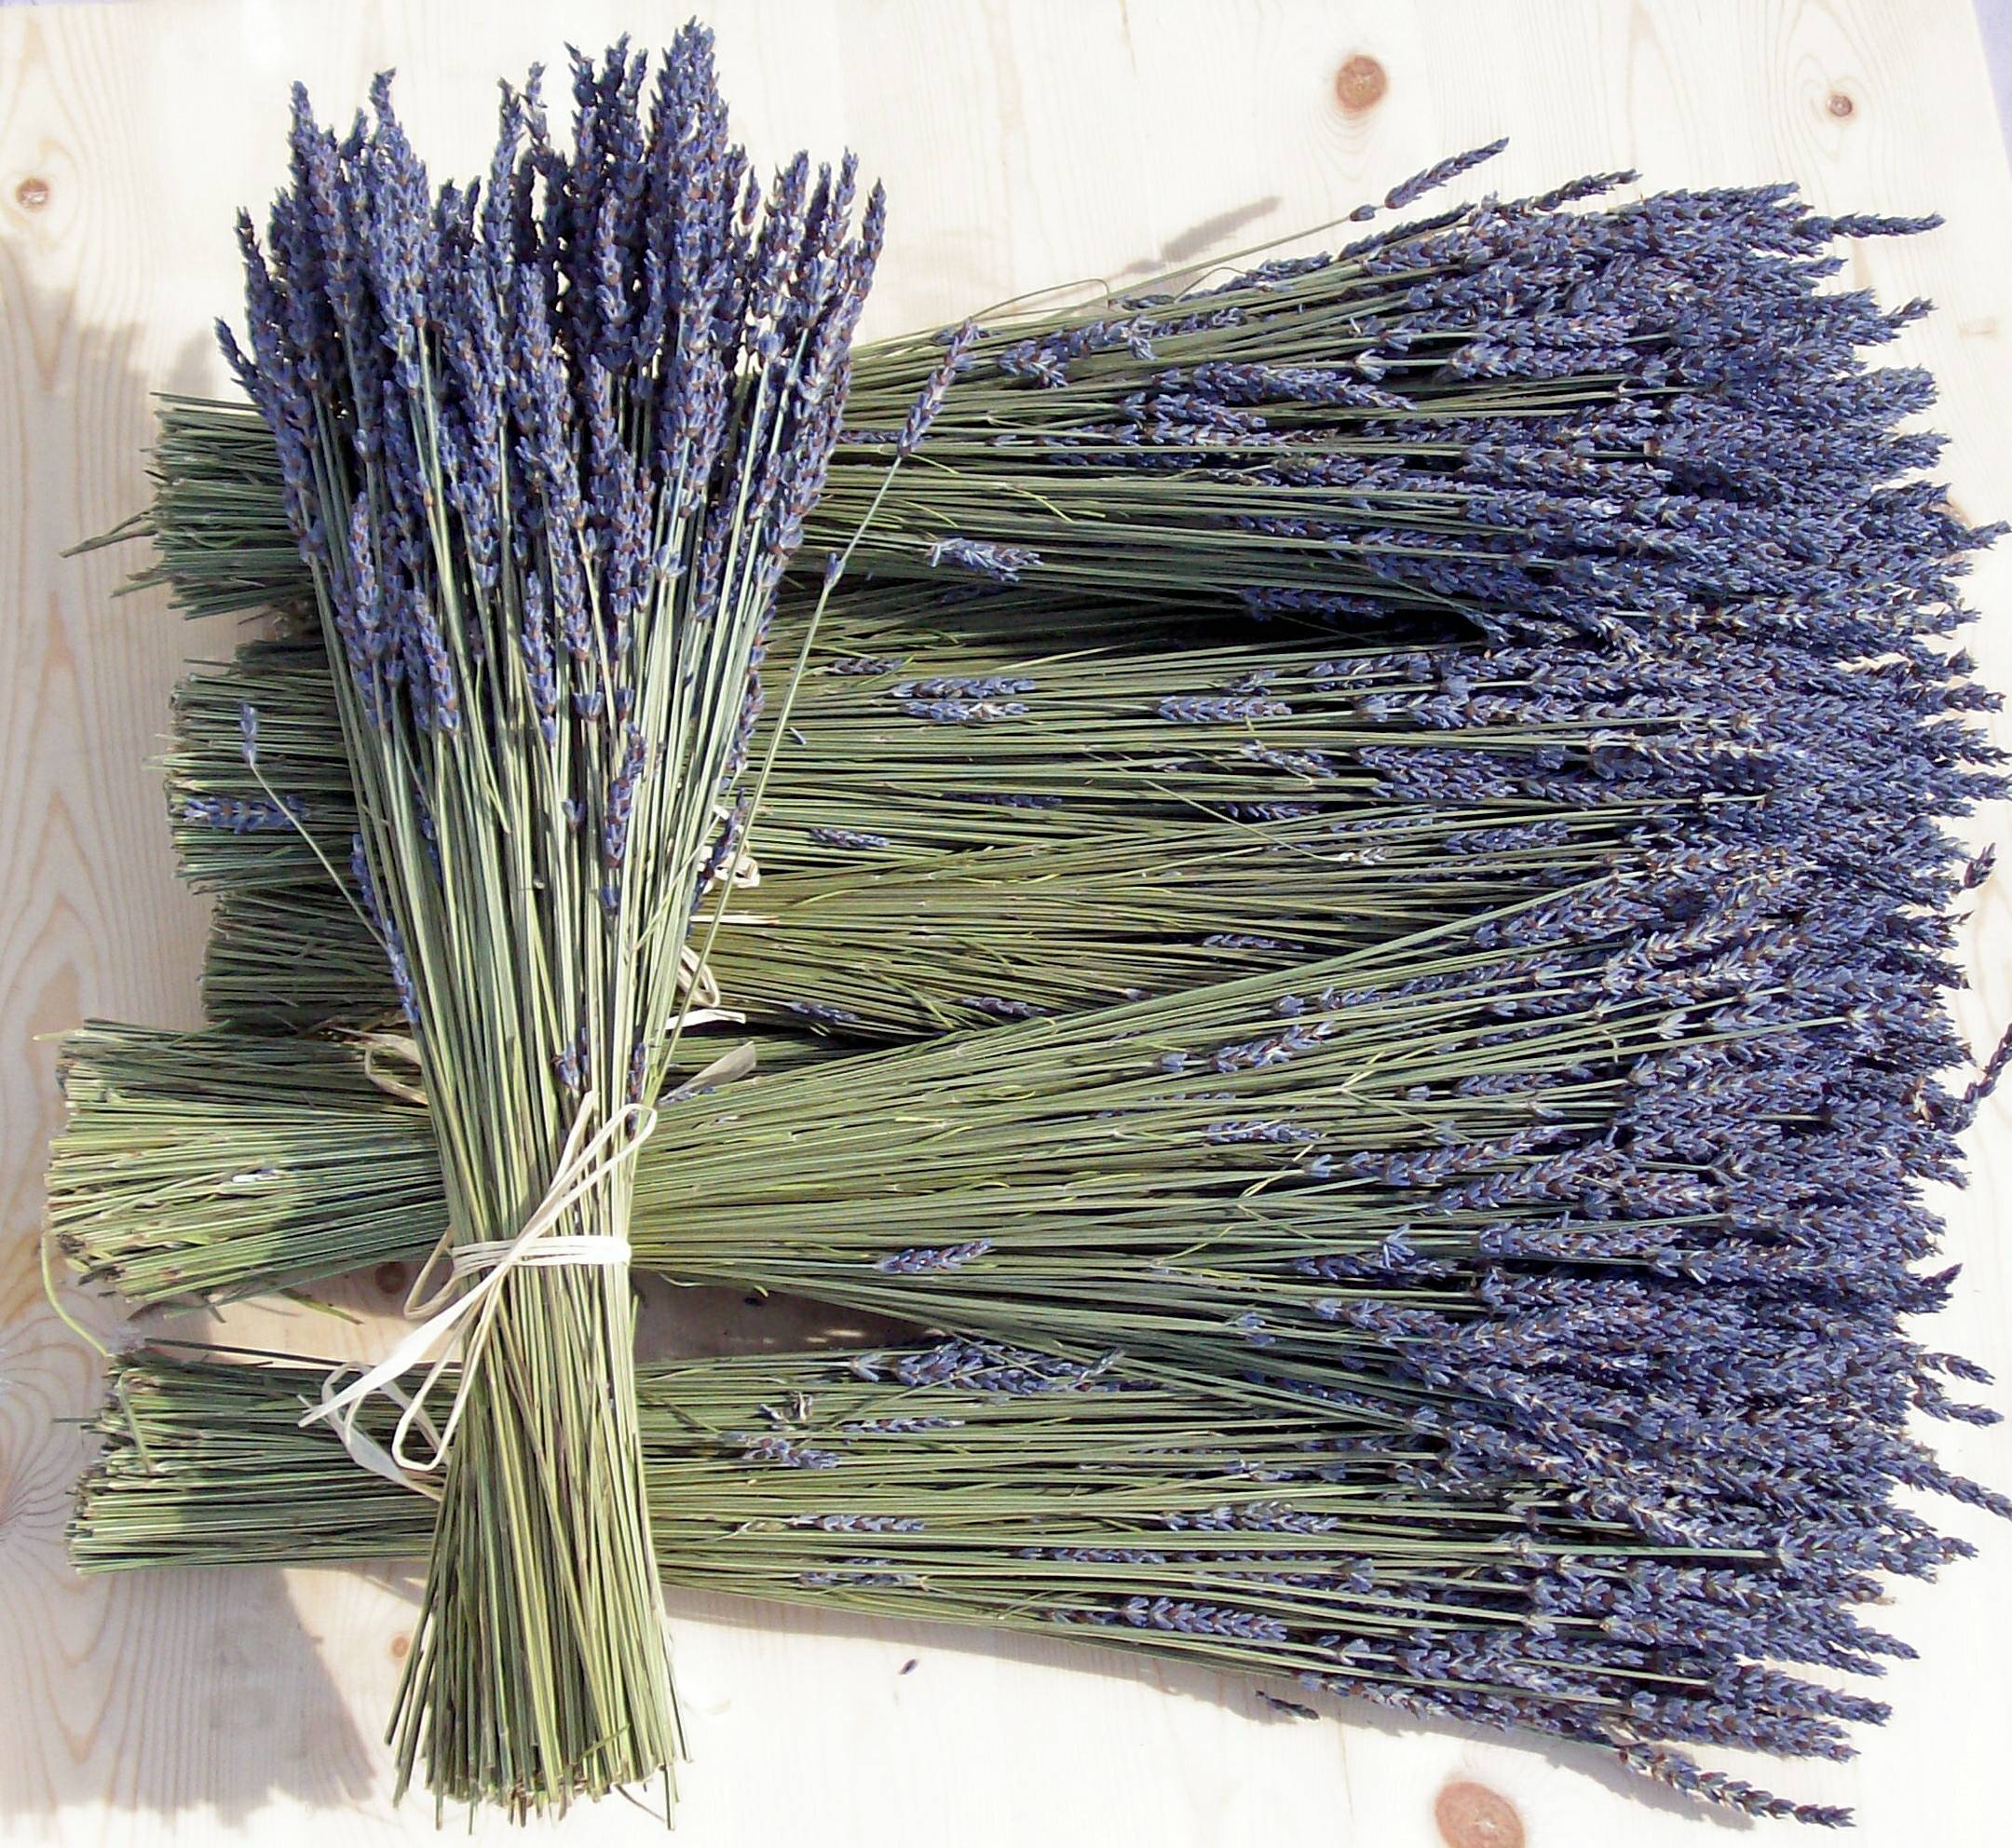 Tổng hợp hình ảnh hoa lavender khô đẹp nhất – Loài hoa may mắn, hạnh phúc - [Kích thước hình ảnh: 2160x1984 px]